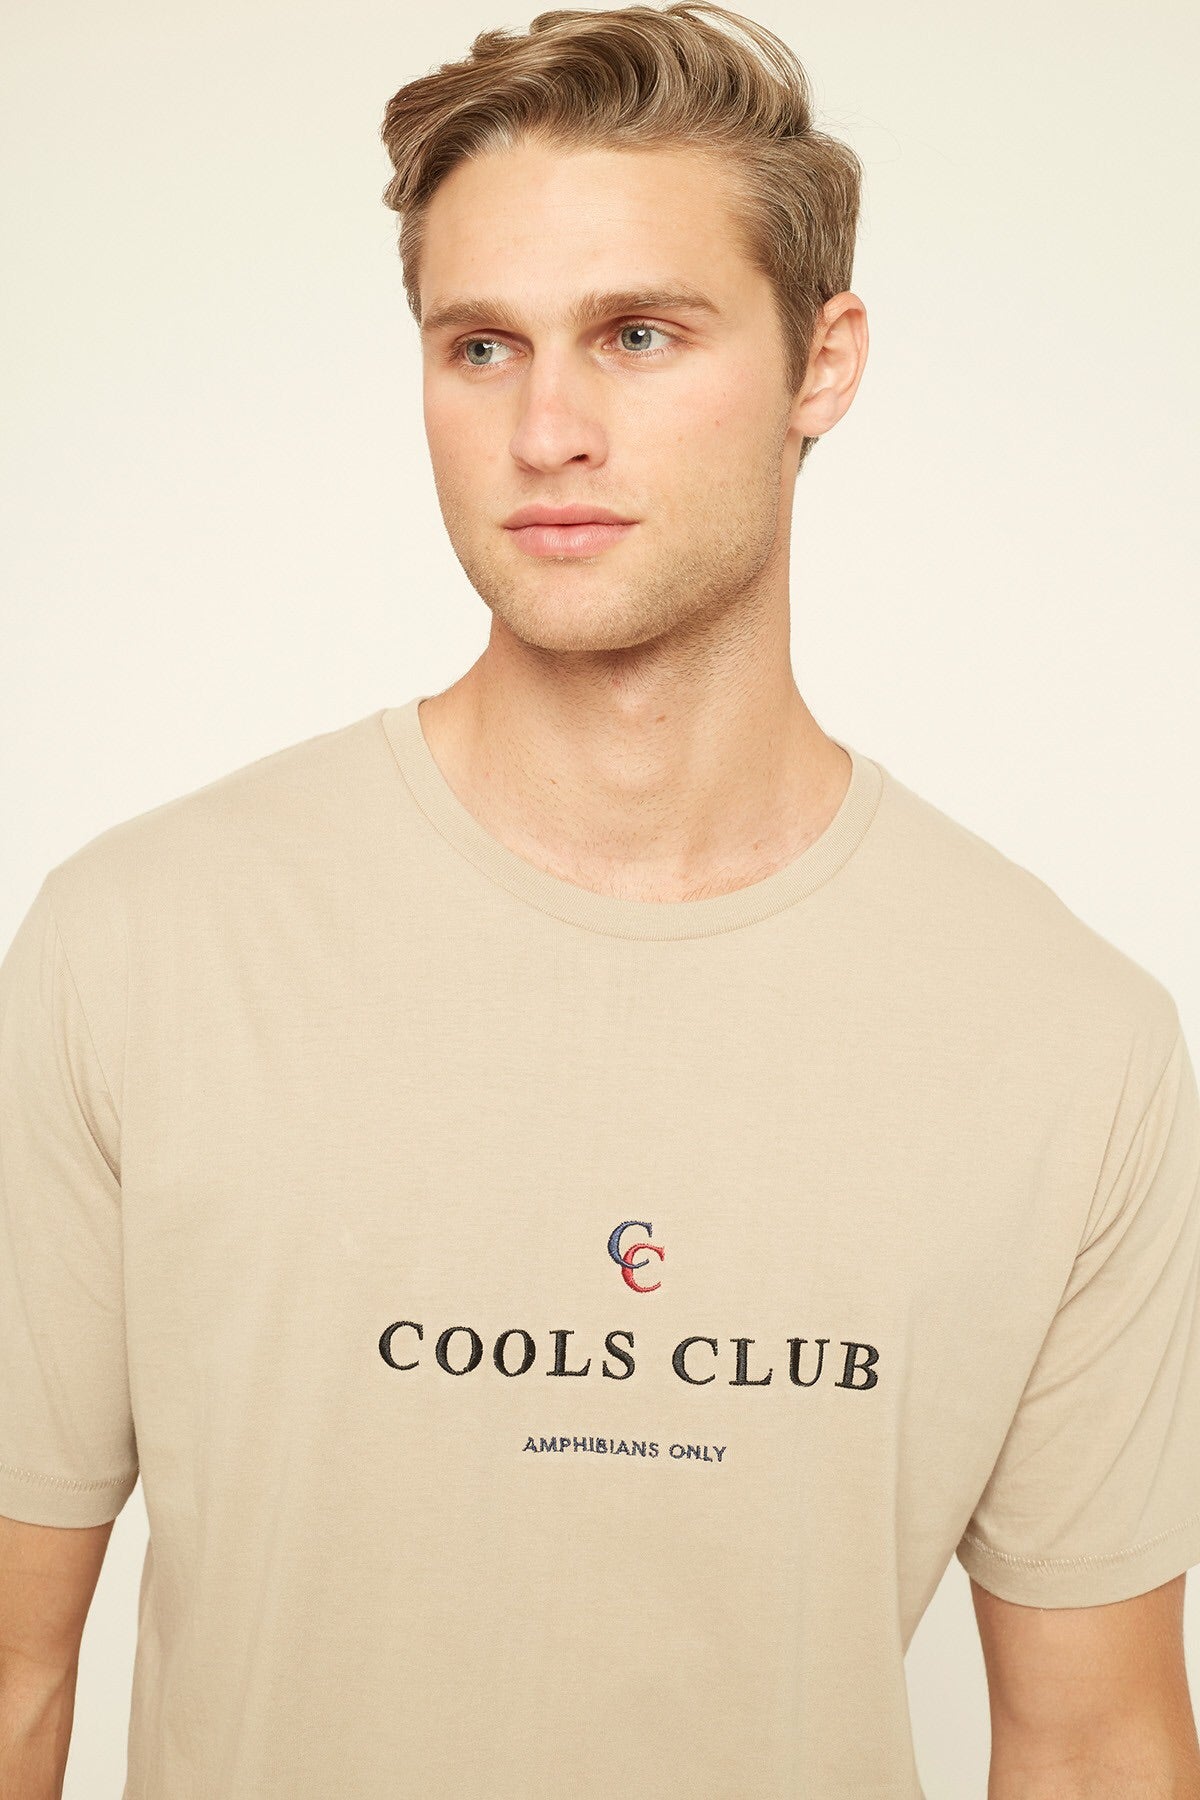 barney cools cools club shirt - 8586 (close up)